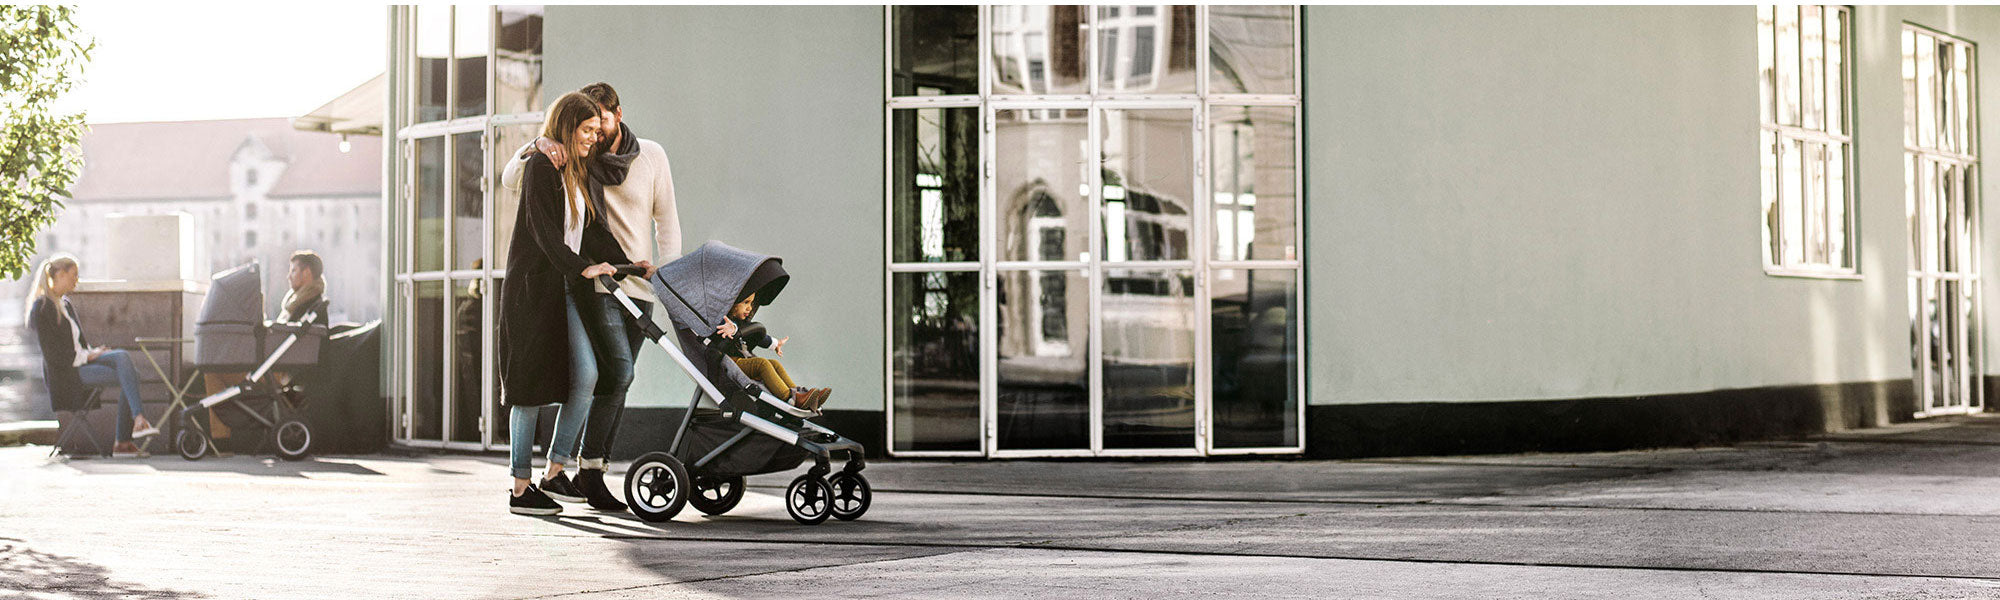 European Strollers, Nursery Furniture, Online baby Retail store